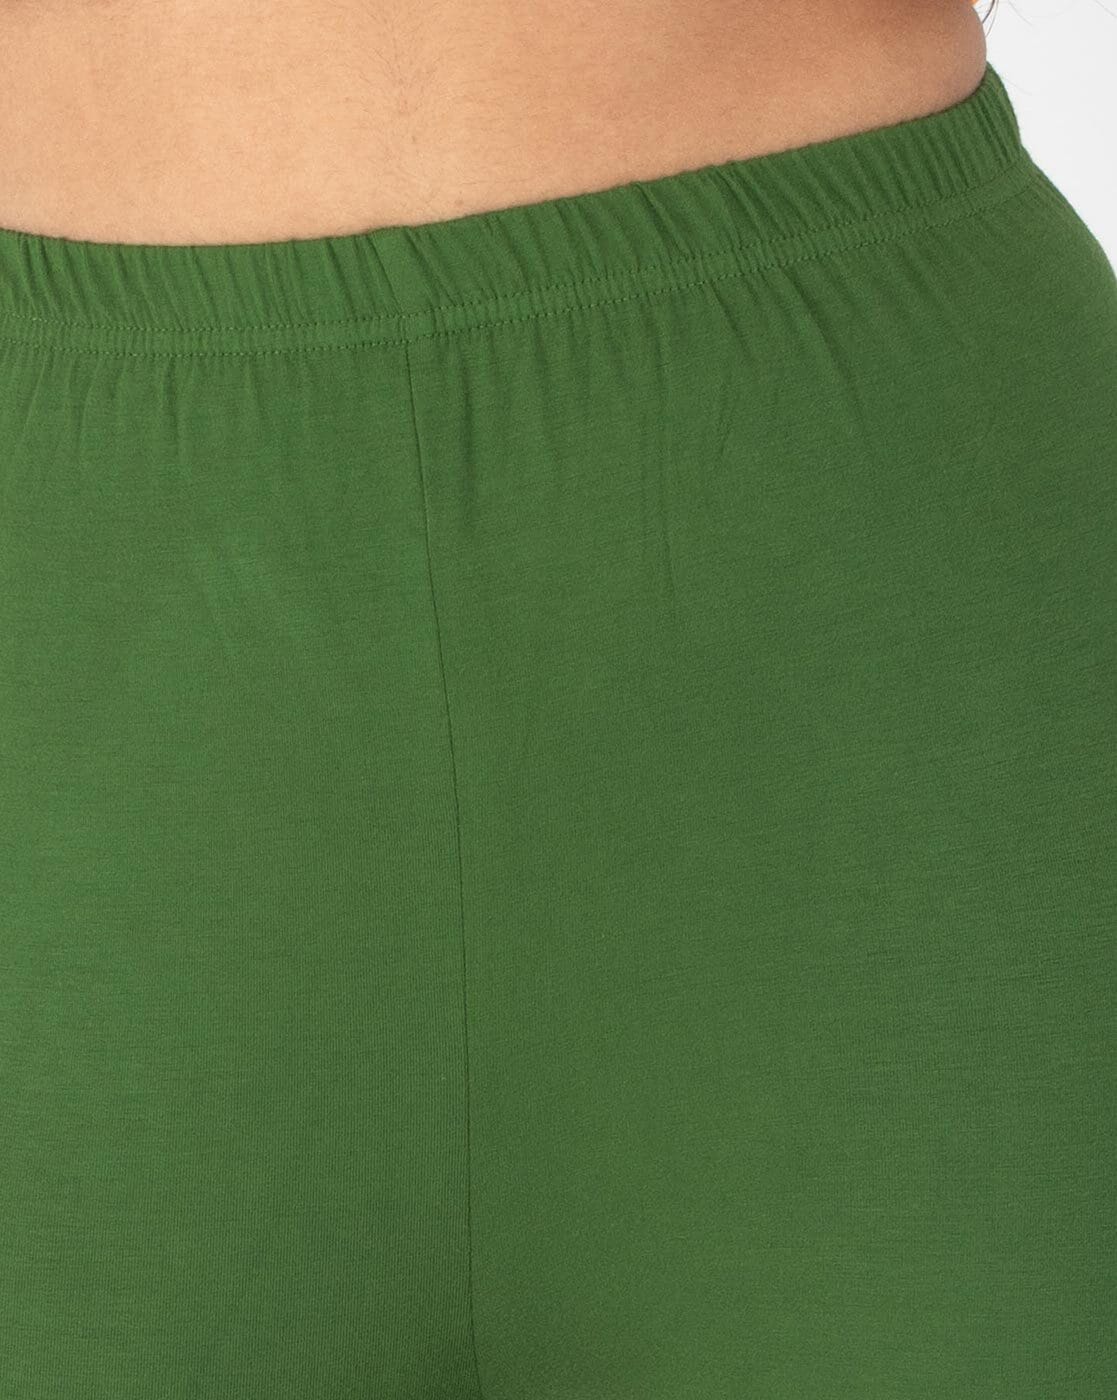 Buy Green Leggings for Women by INDIAN FLOWER Online